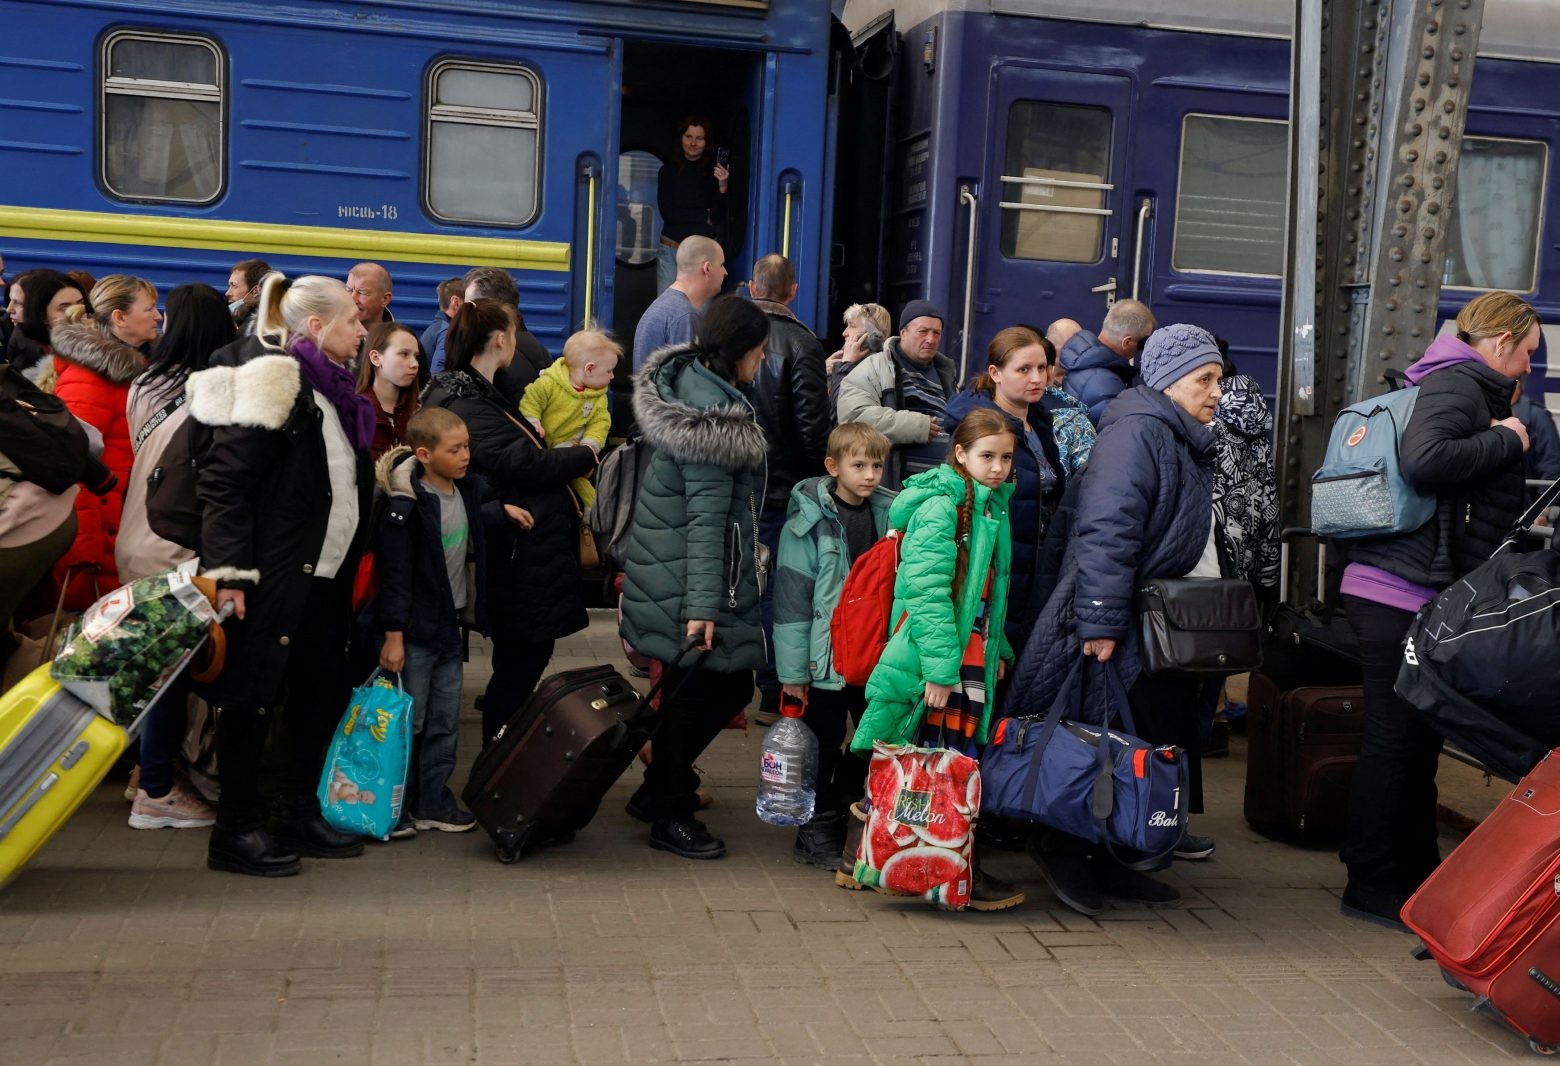 Πόλεμος στην Ουκρανία: Περισσότερα από τα μισά παιδιά έχουν γίνει πρόσφυγες